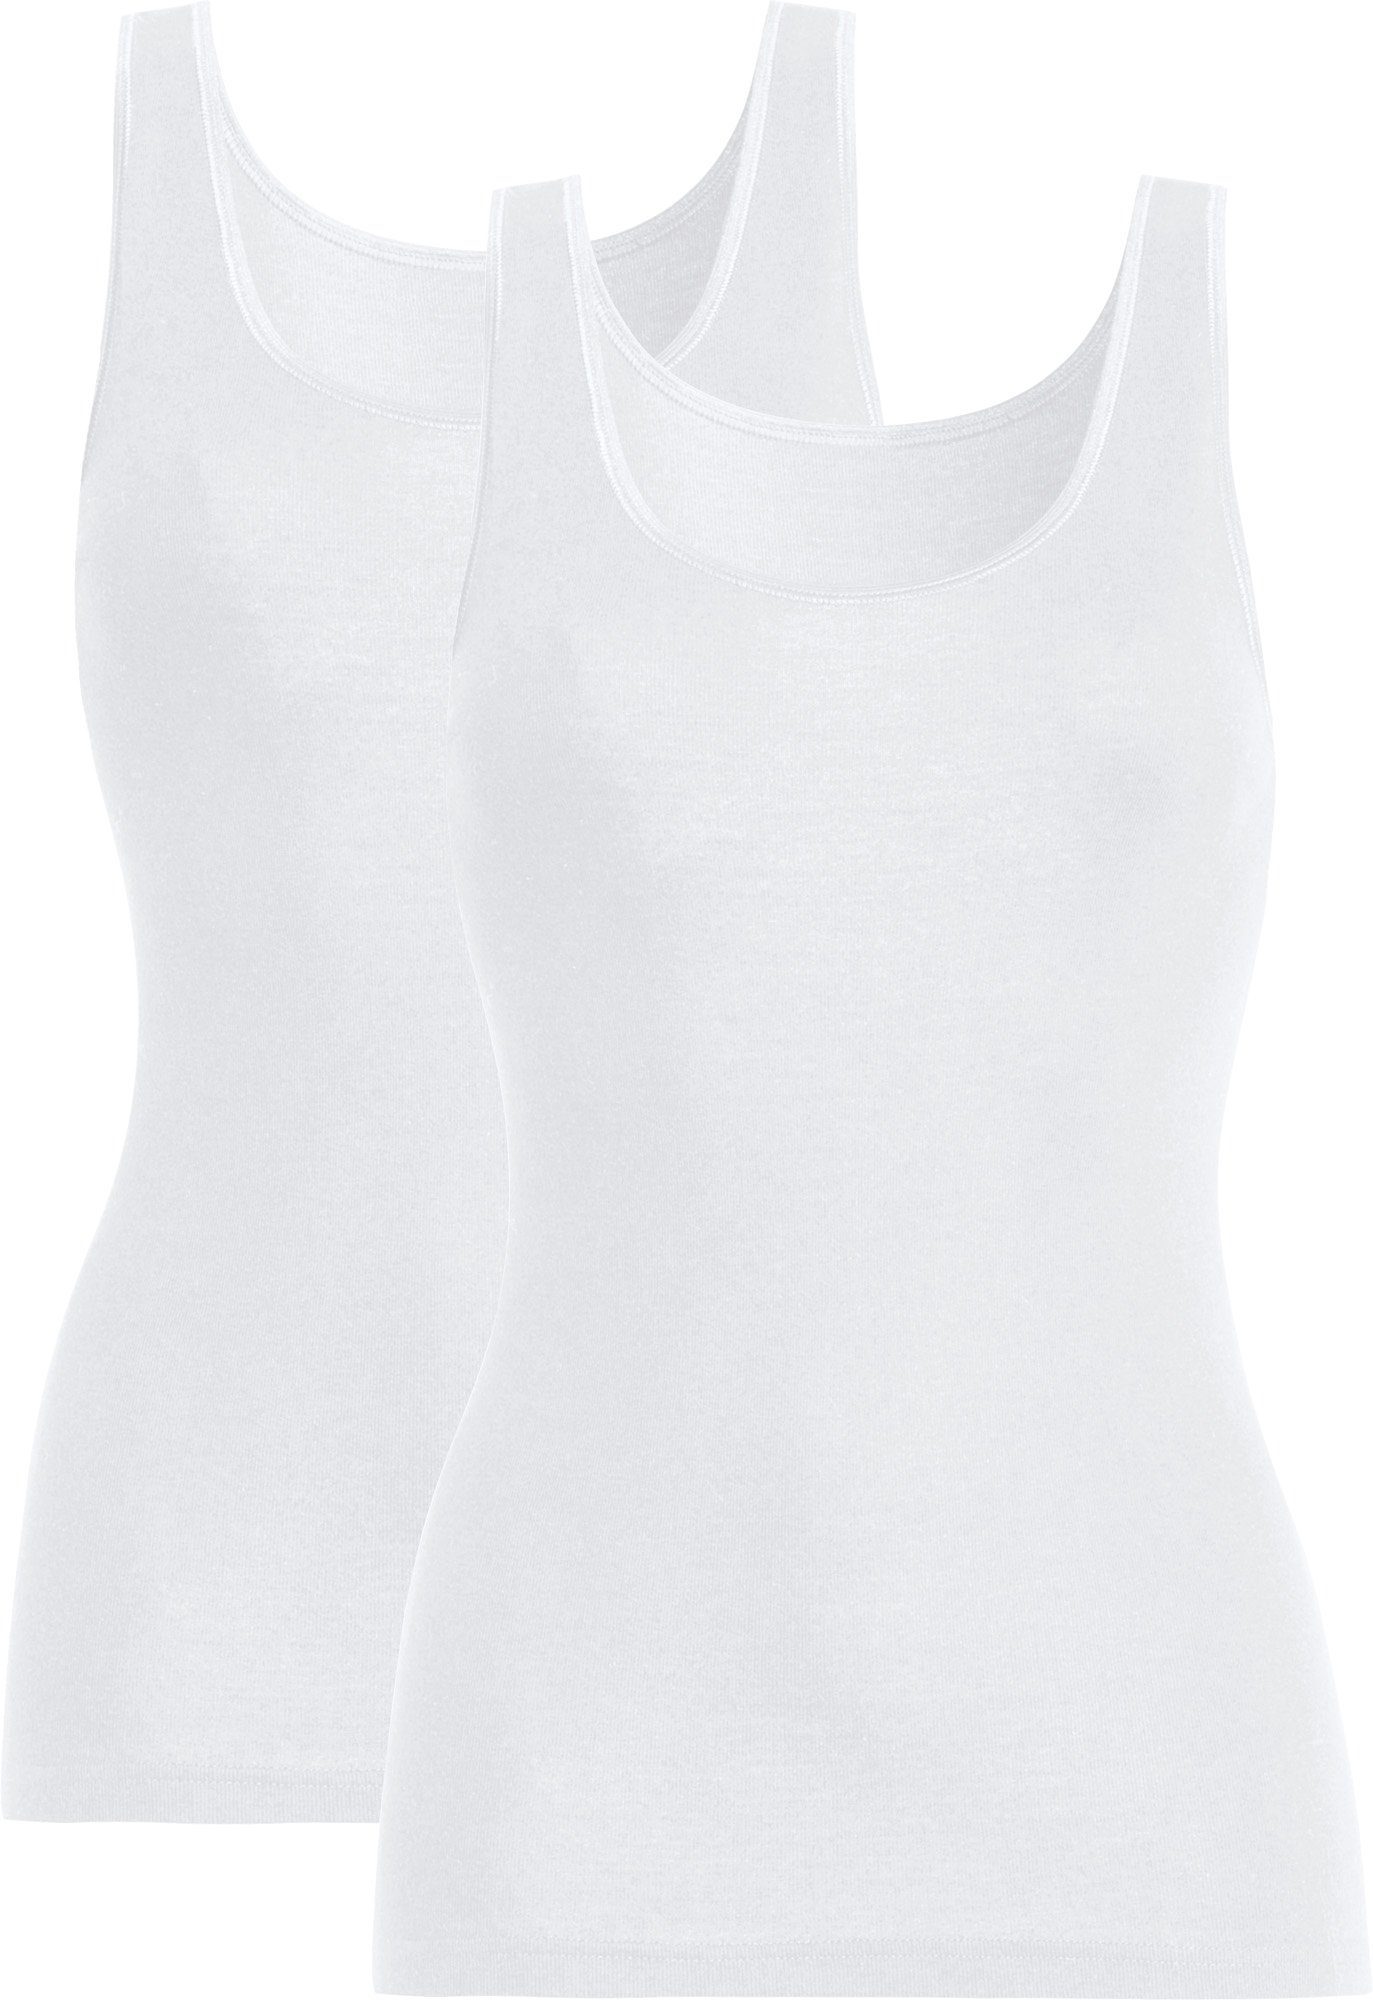 conta Unterhemd Damen-Unterhemd 2er-Pack Feinripp Uni weiß